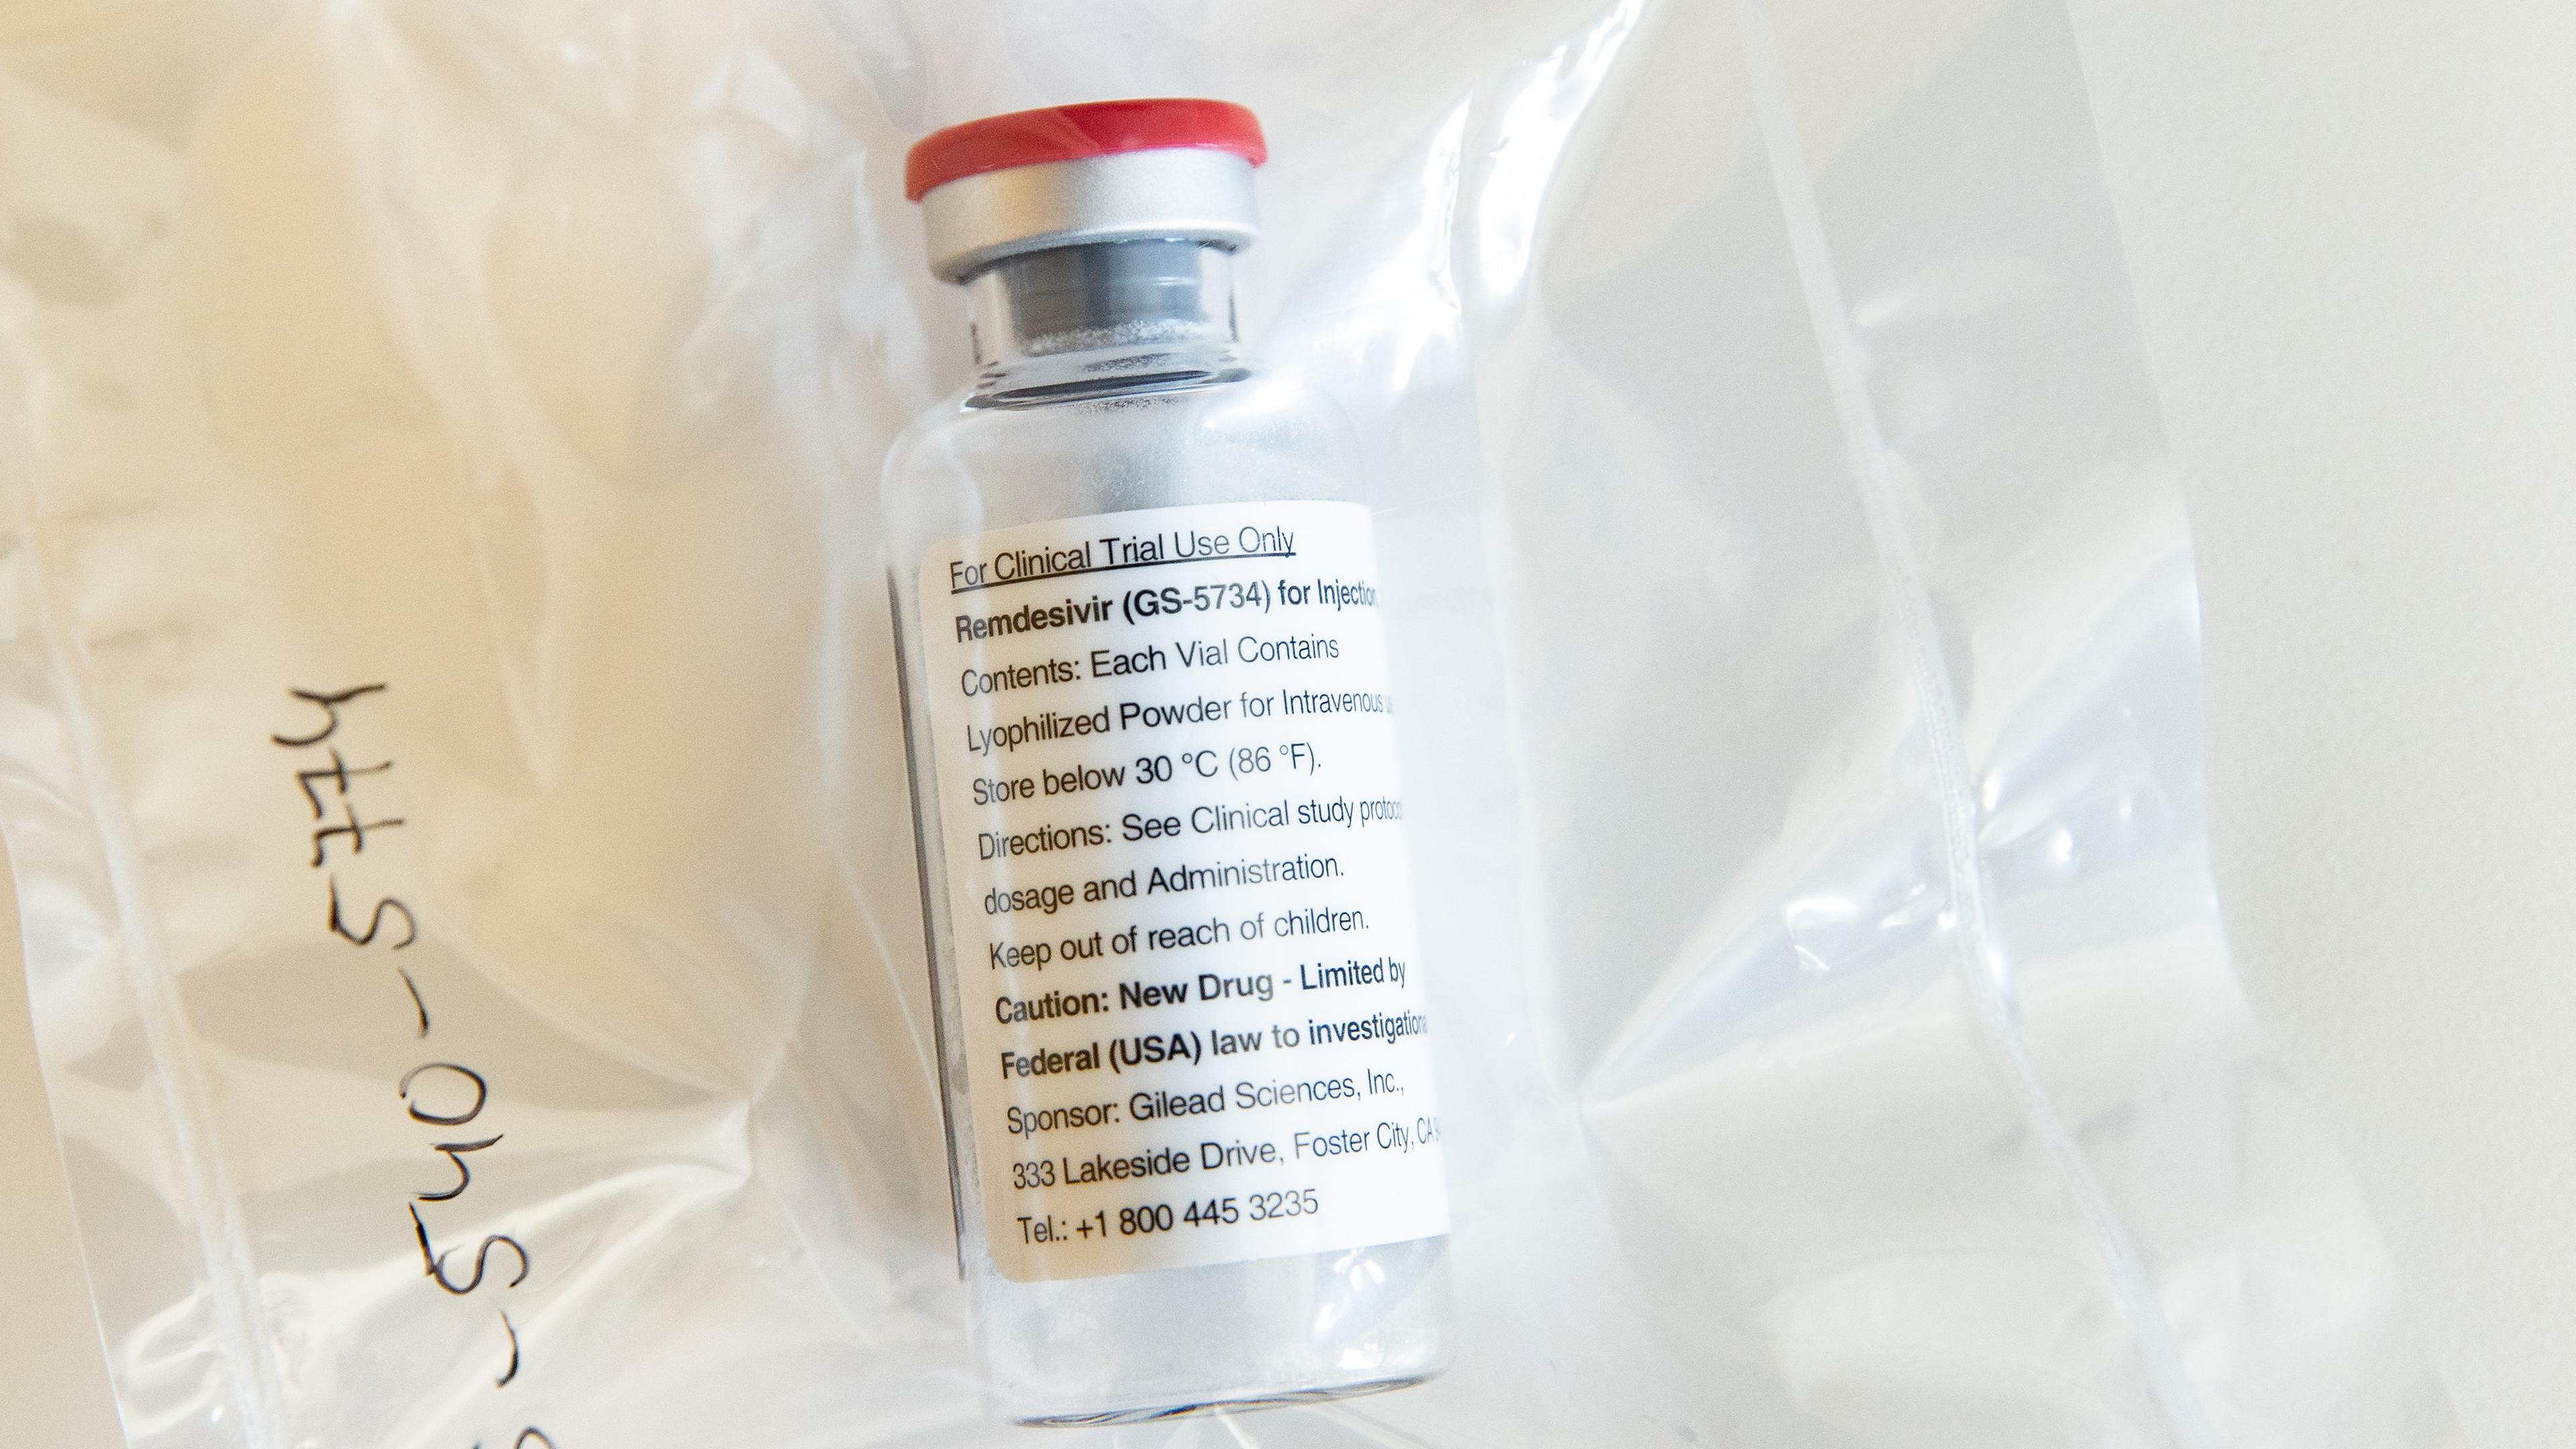 Eine Ampulle des Medikamentes Remdesivir, das zur Behandlung von Ebola entwickelt wurde.